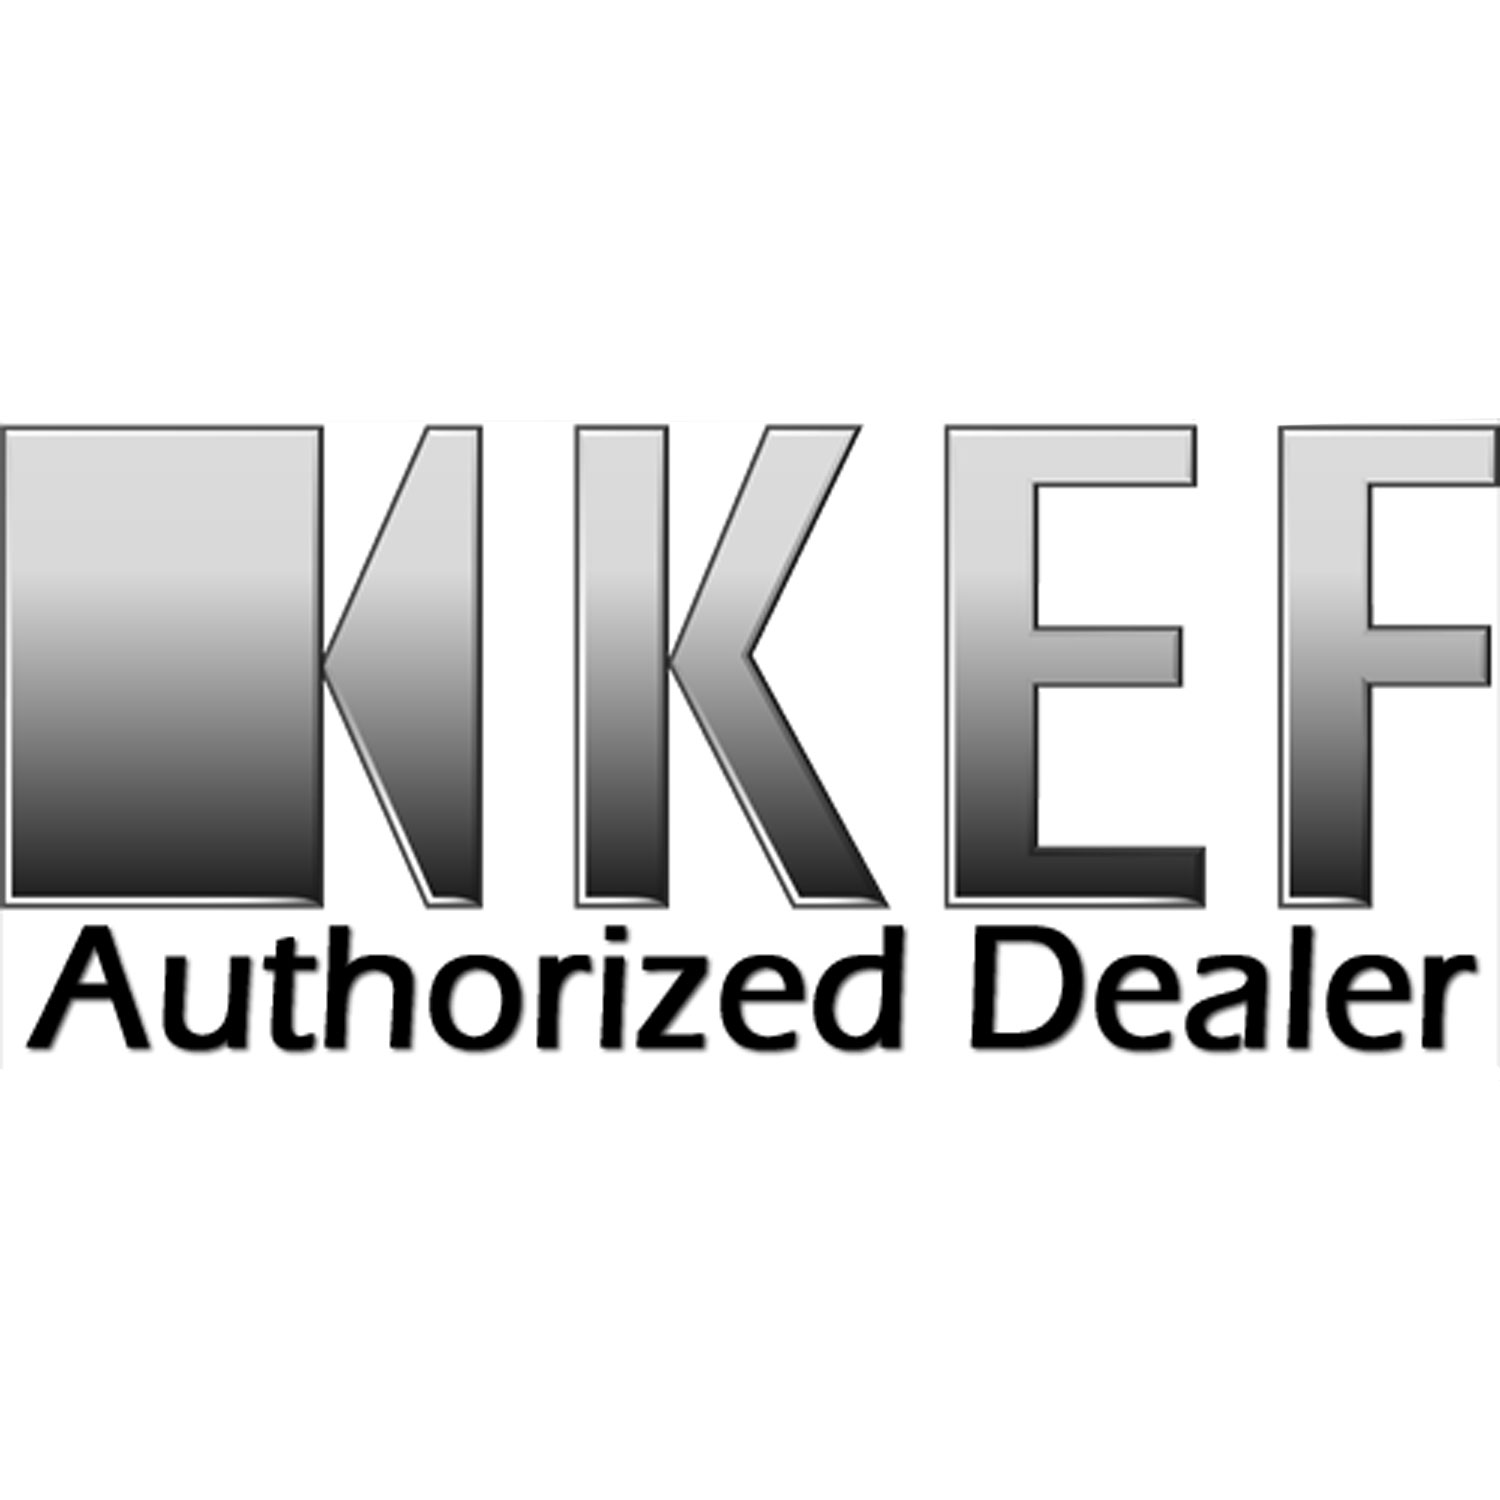 KEF Dealer